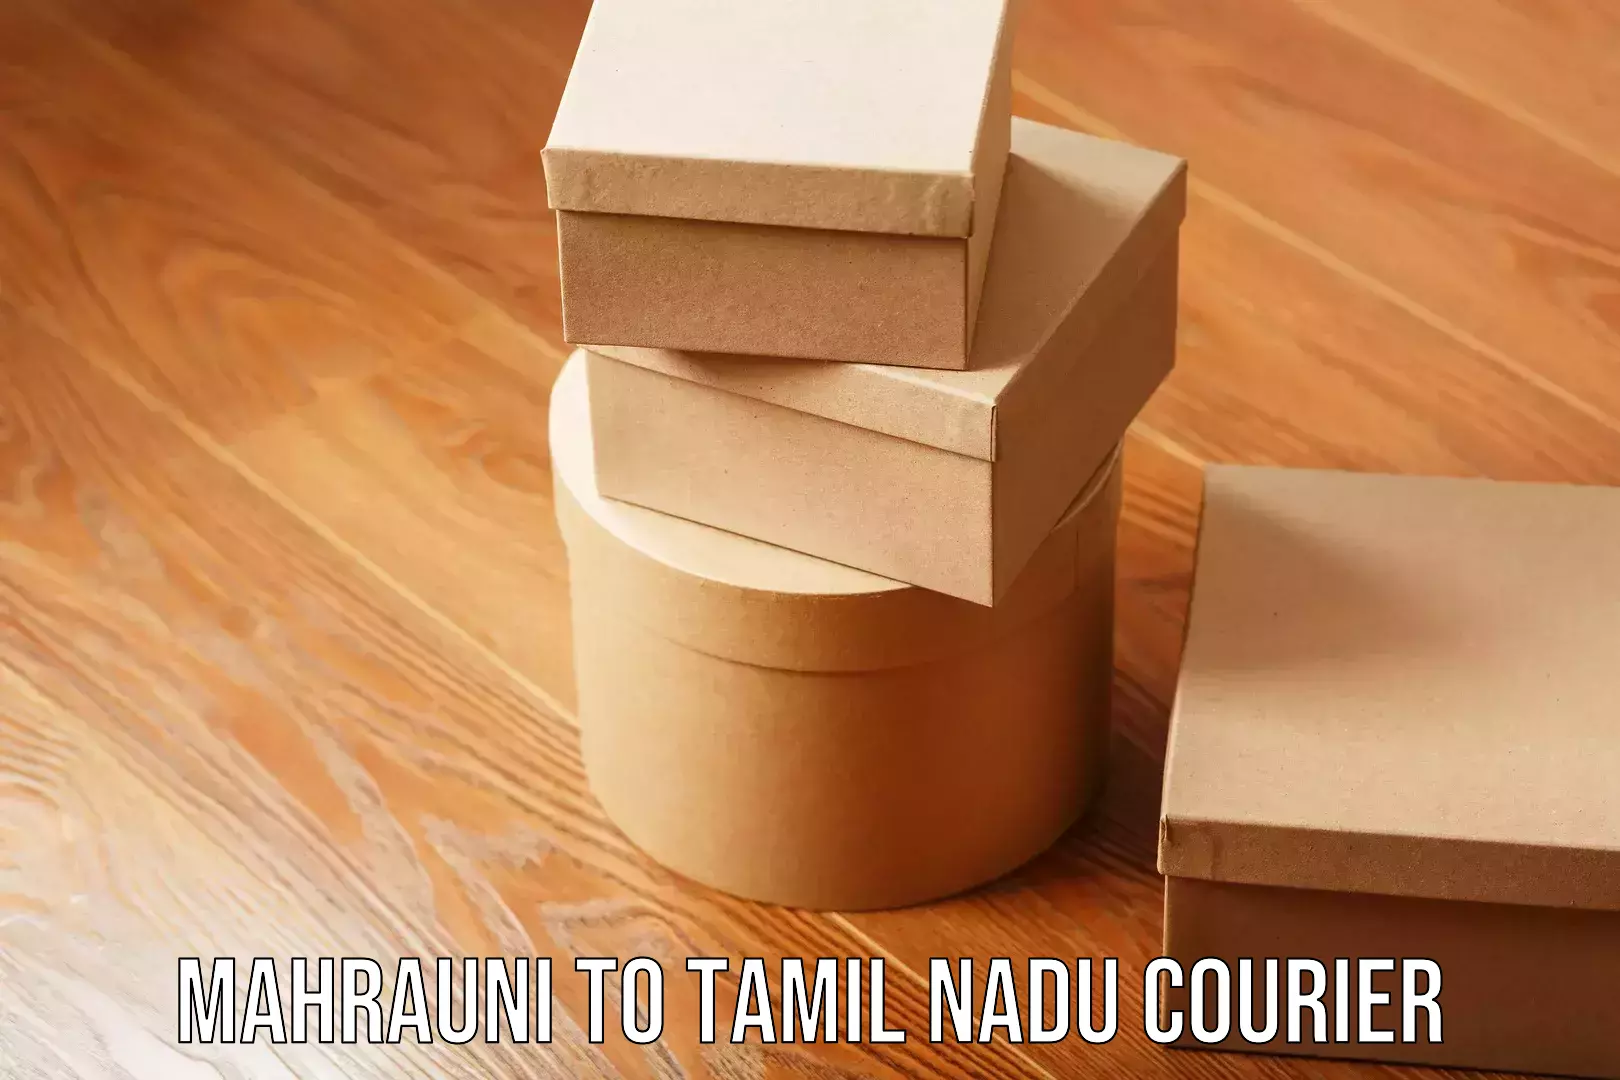 Seamless moving process Mahrauni to Tamil Nadu